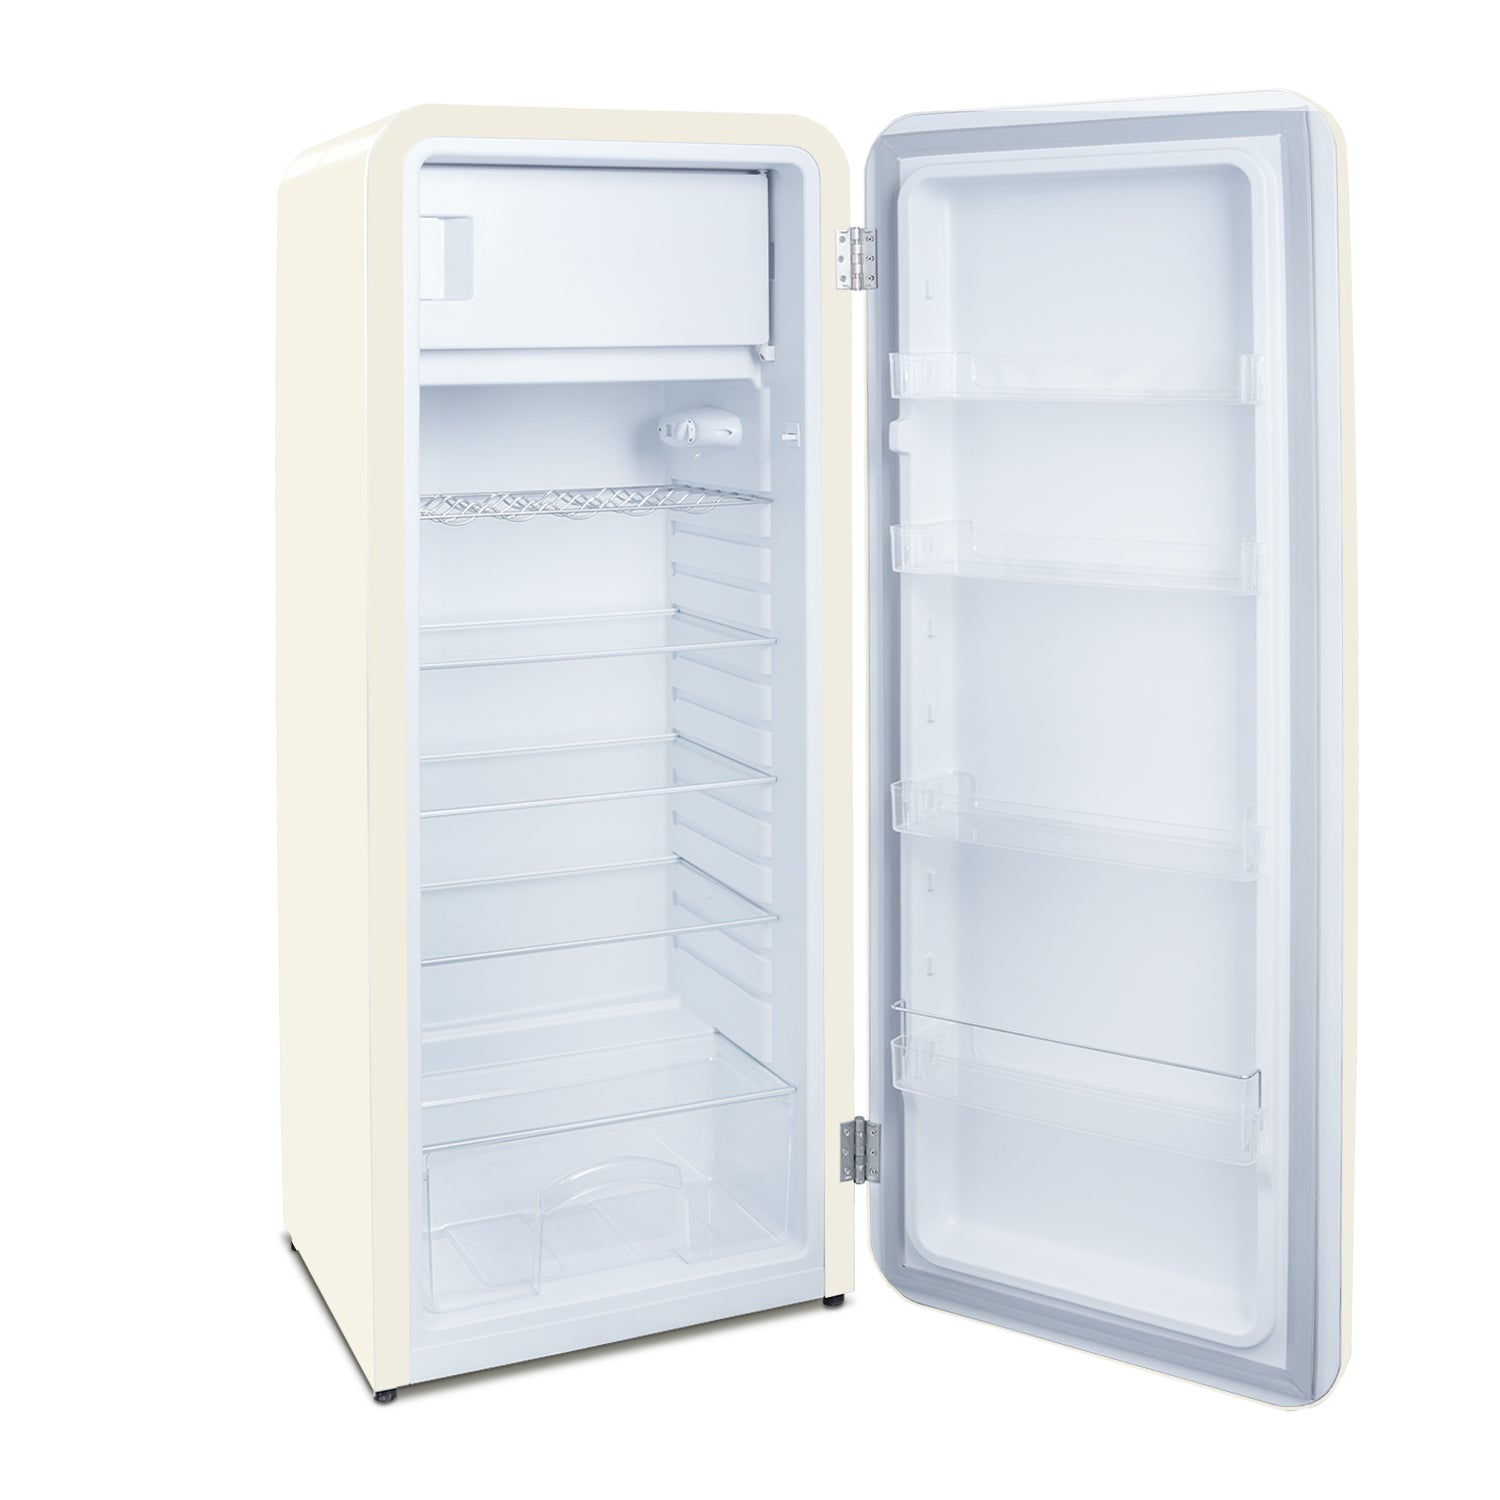 10 Cu.Ft Single Door Refrigerator with Freezer